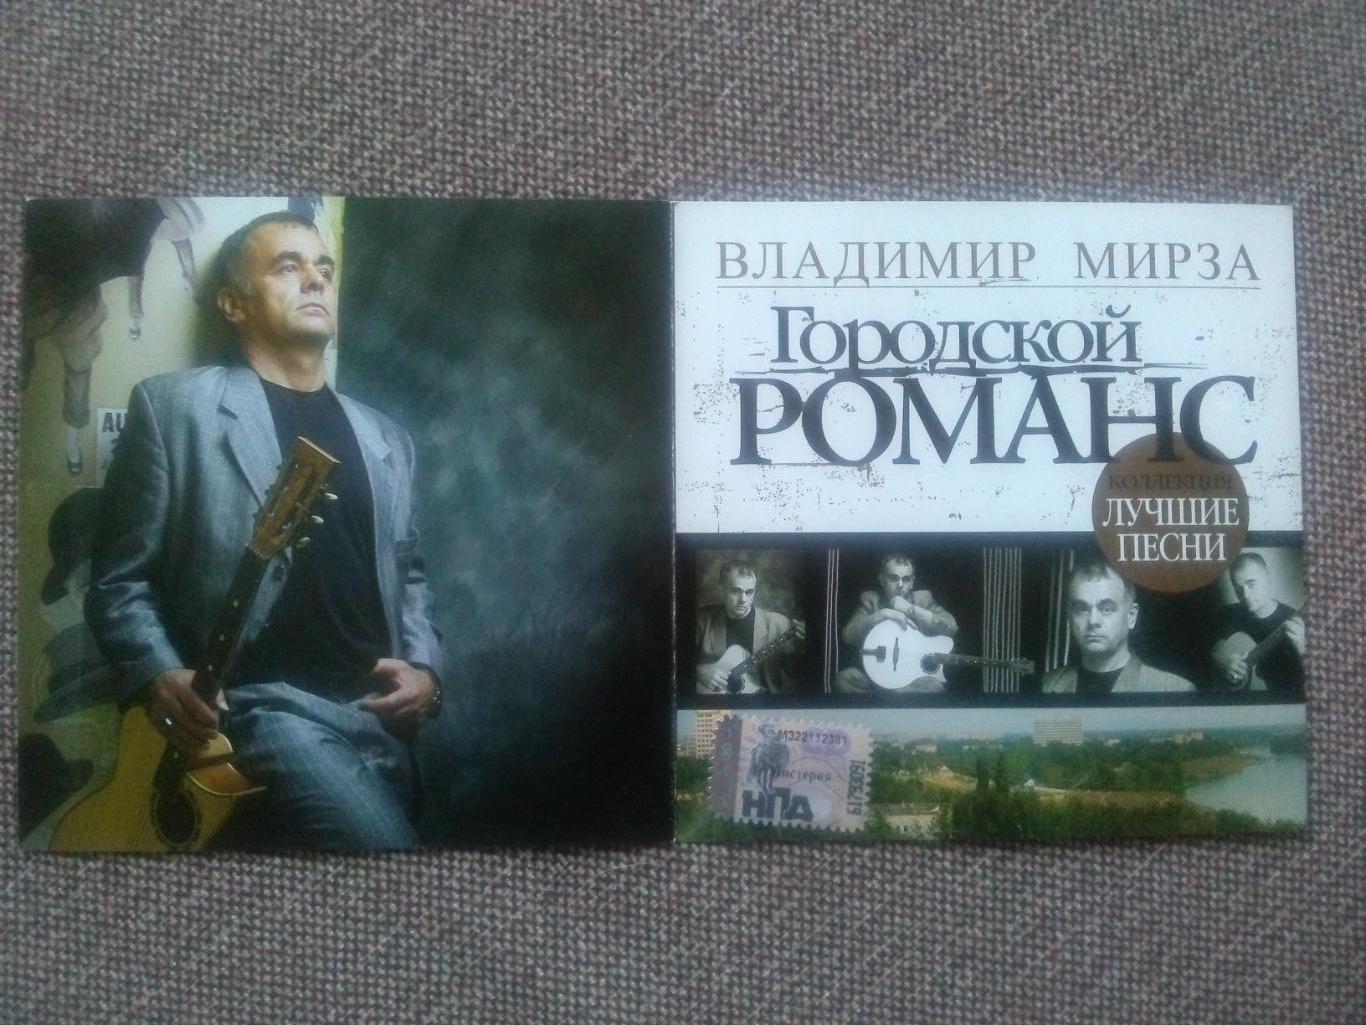 CD диск : Владимир Мирза -Городской романс2007 г. (Бард Шансон) 2